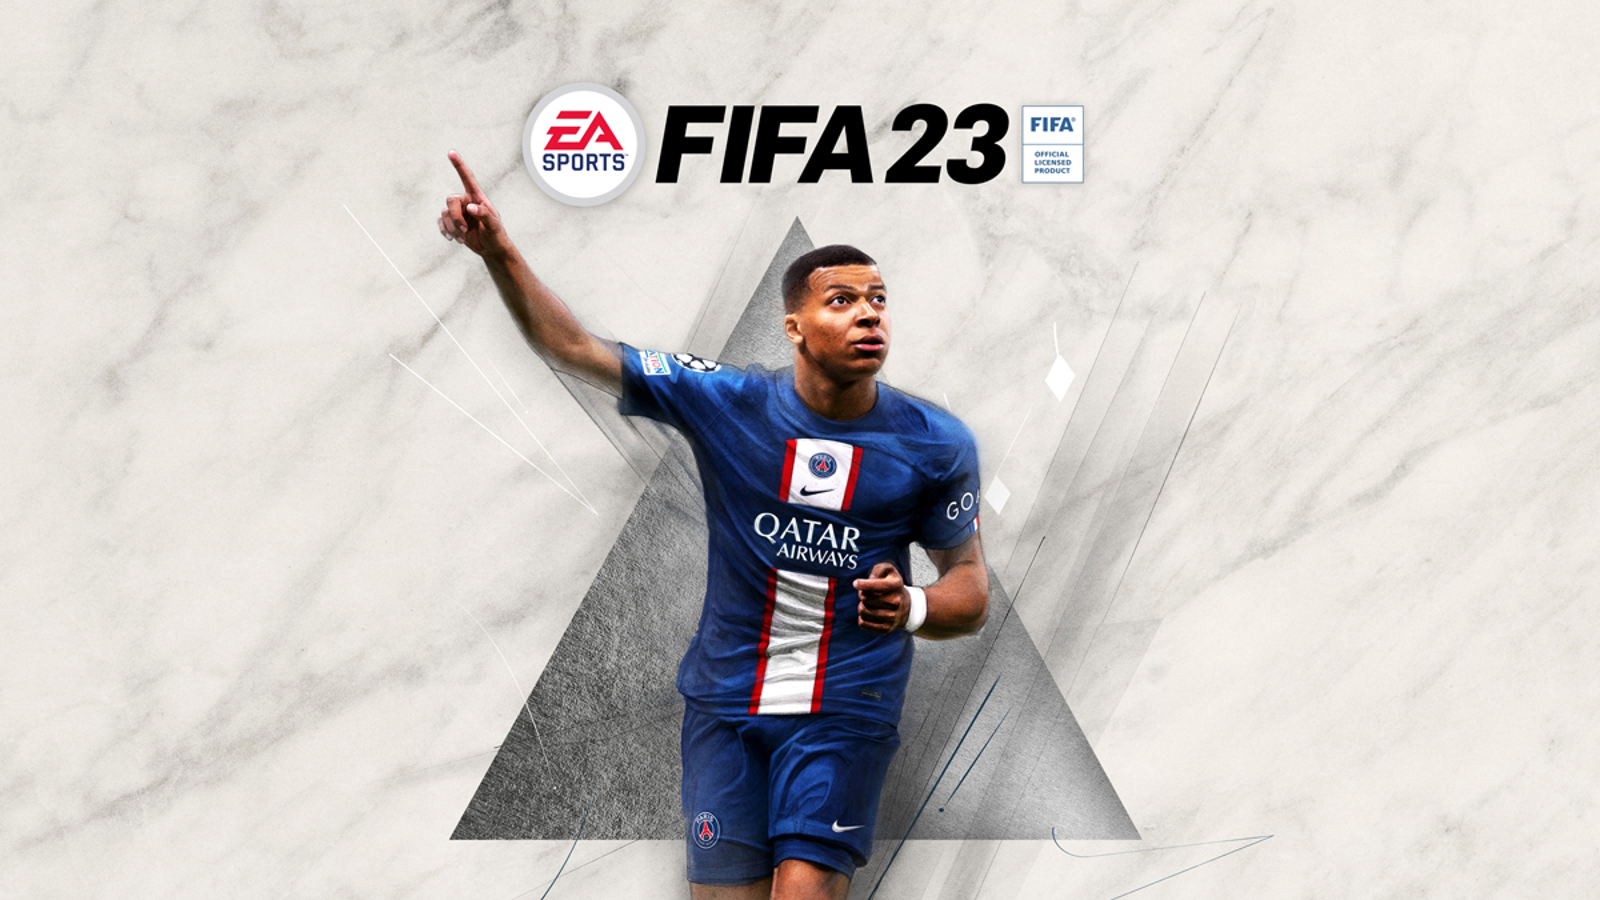 FIFA Mobile - Guia - Site oficial da EA SPORTS